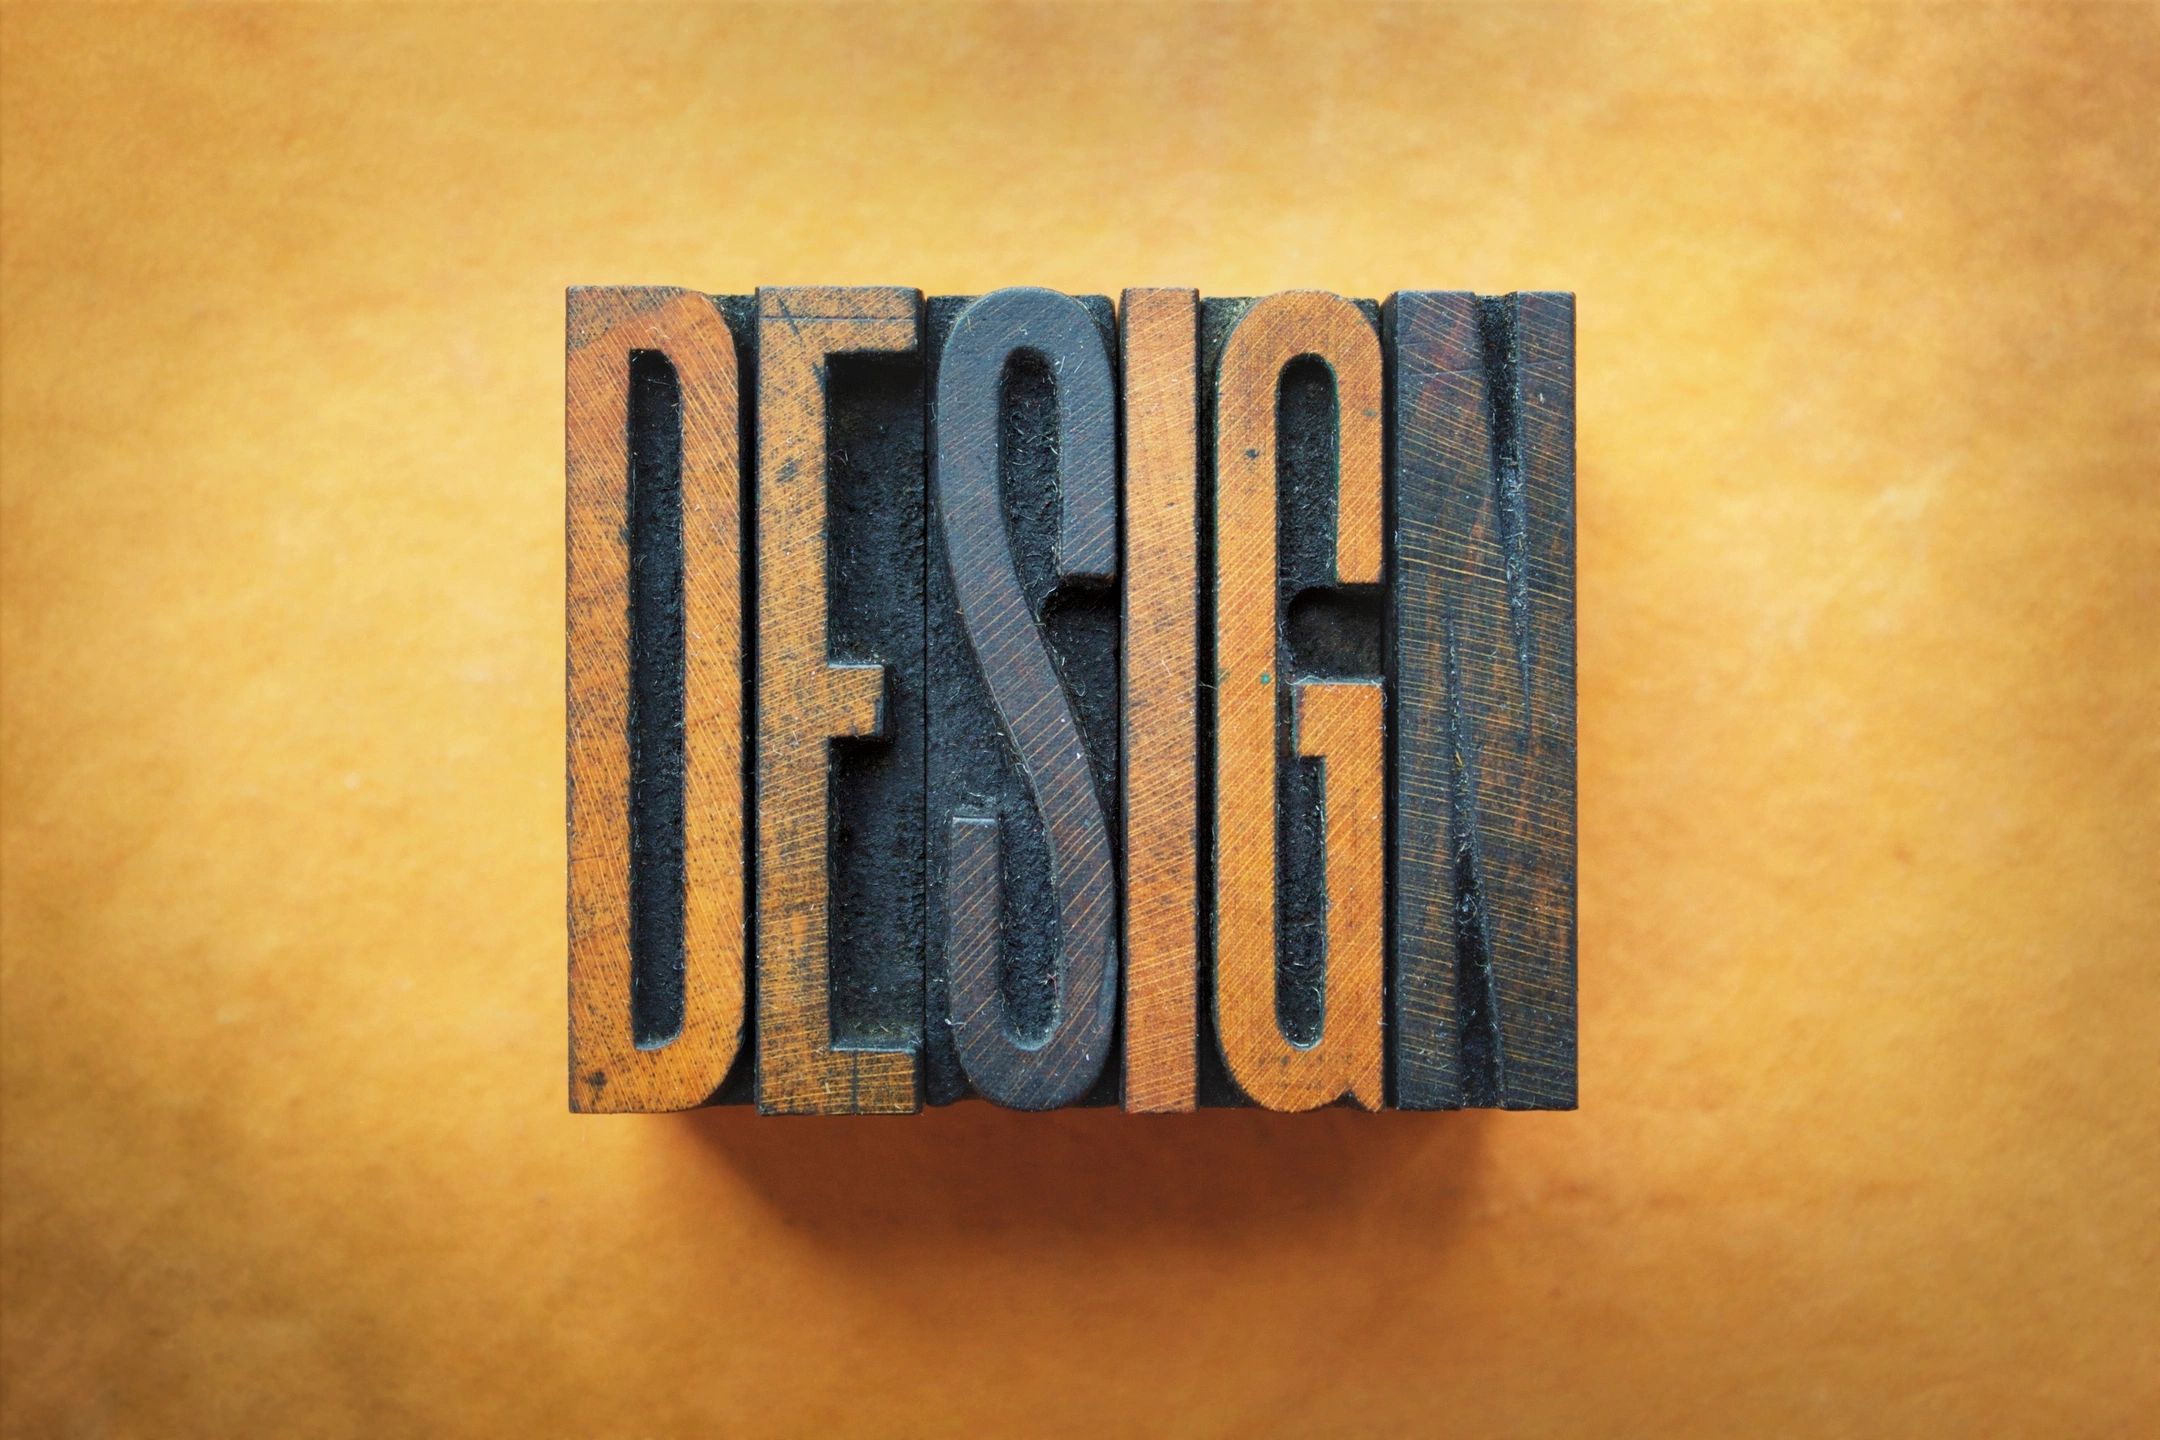 https://sobewebsite.design/ecommerce-website-design